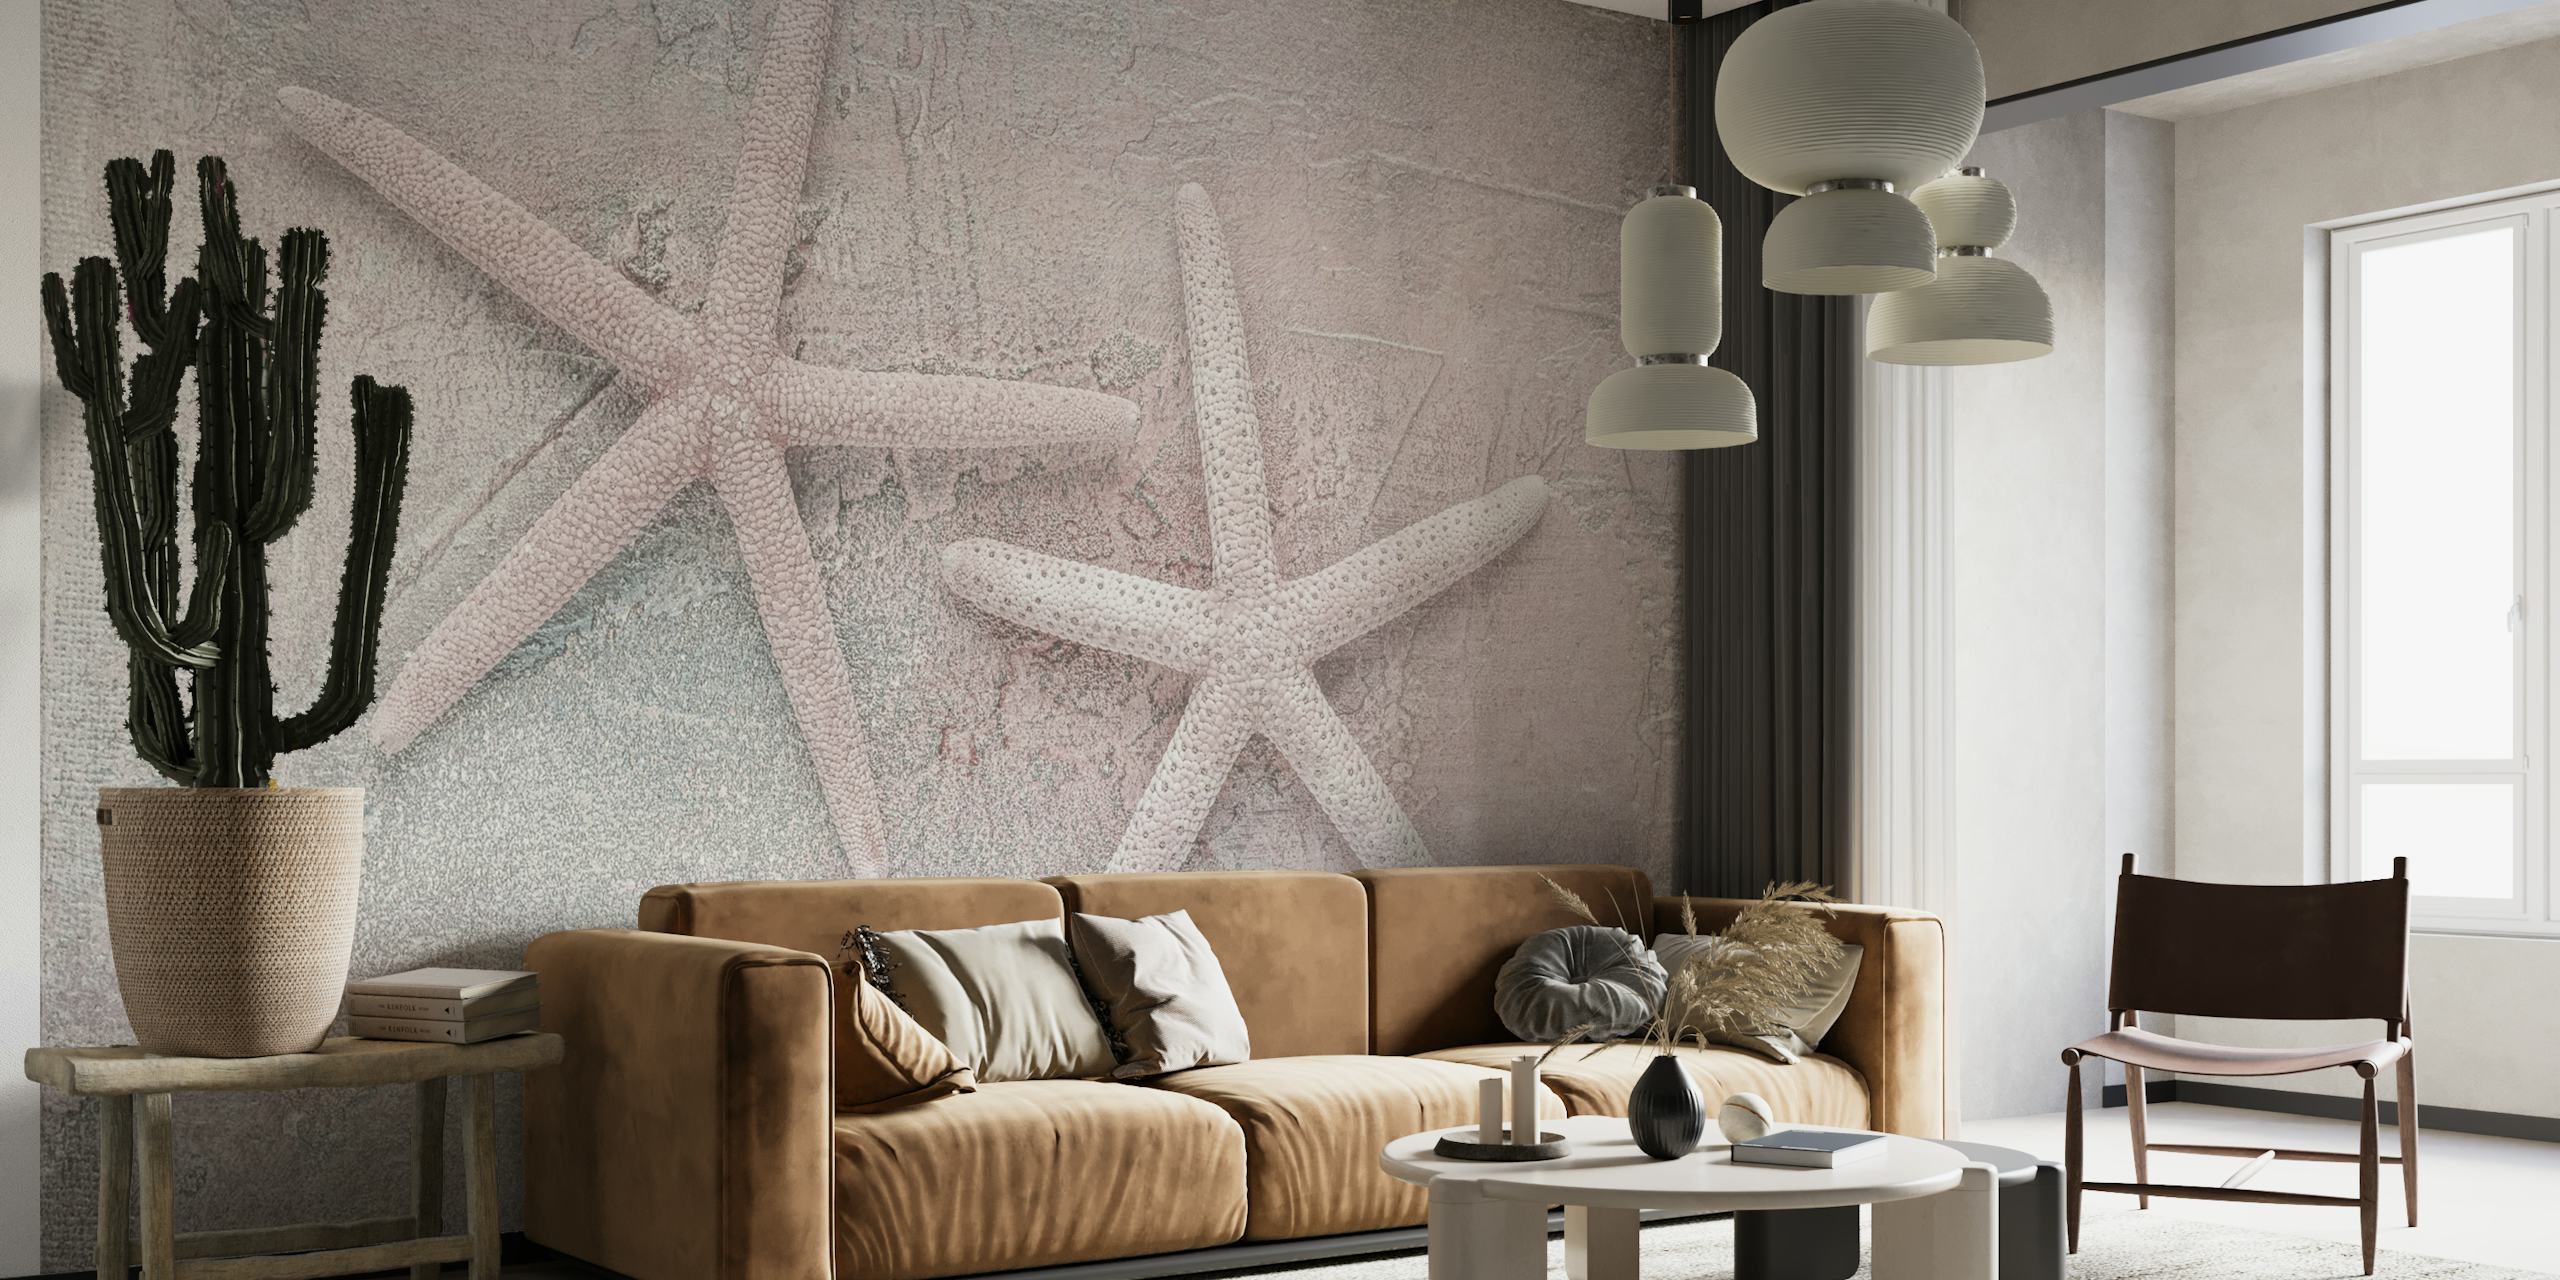 Blush Pink Starfish zidna slika s dvije morske zvijezde na teksturiranoj pozadini